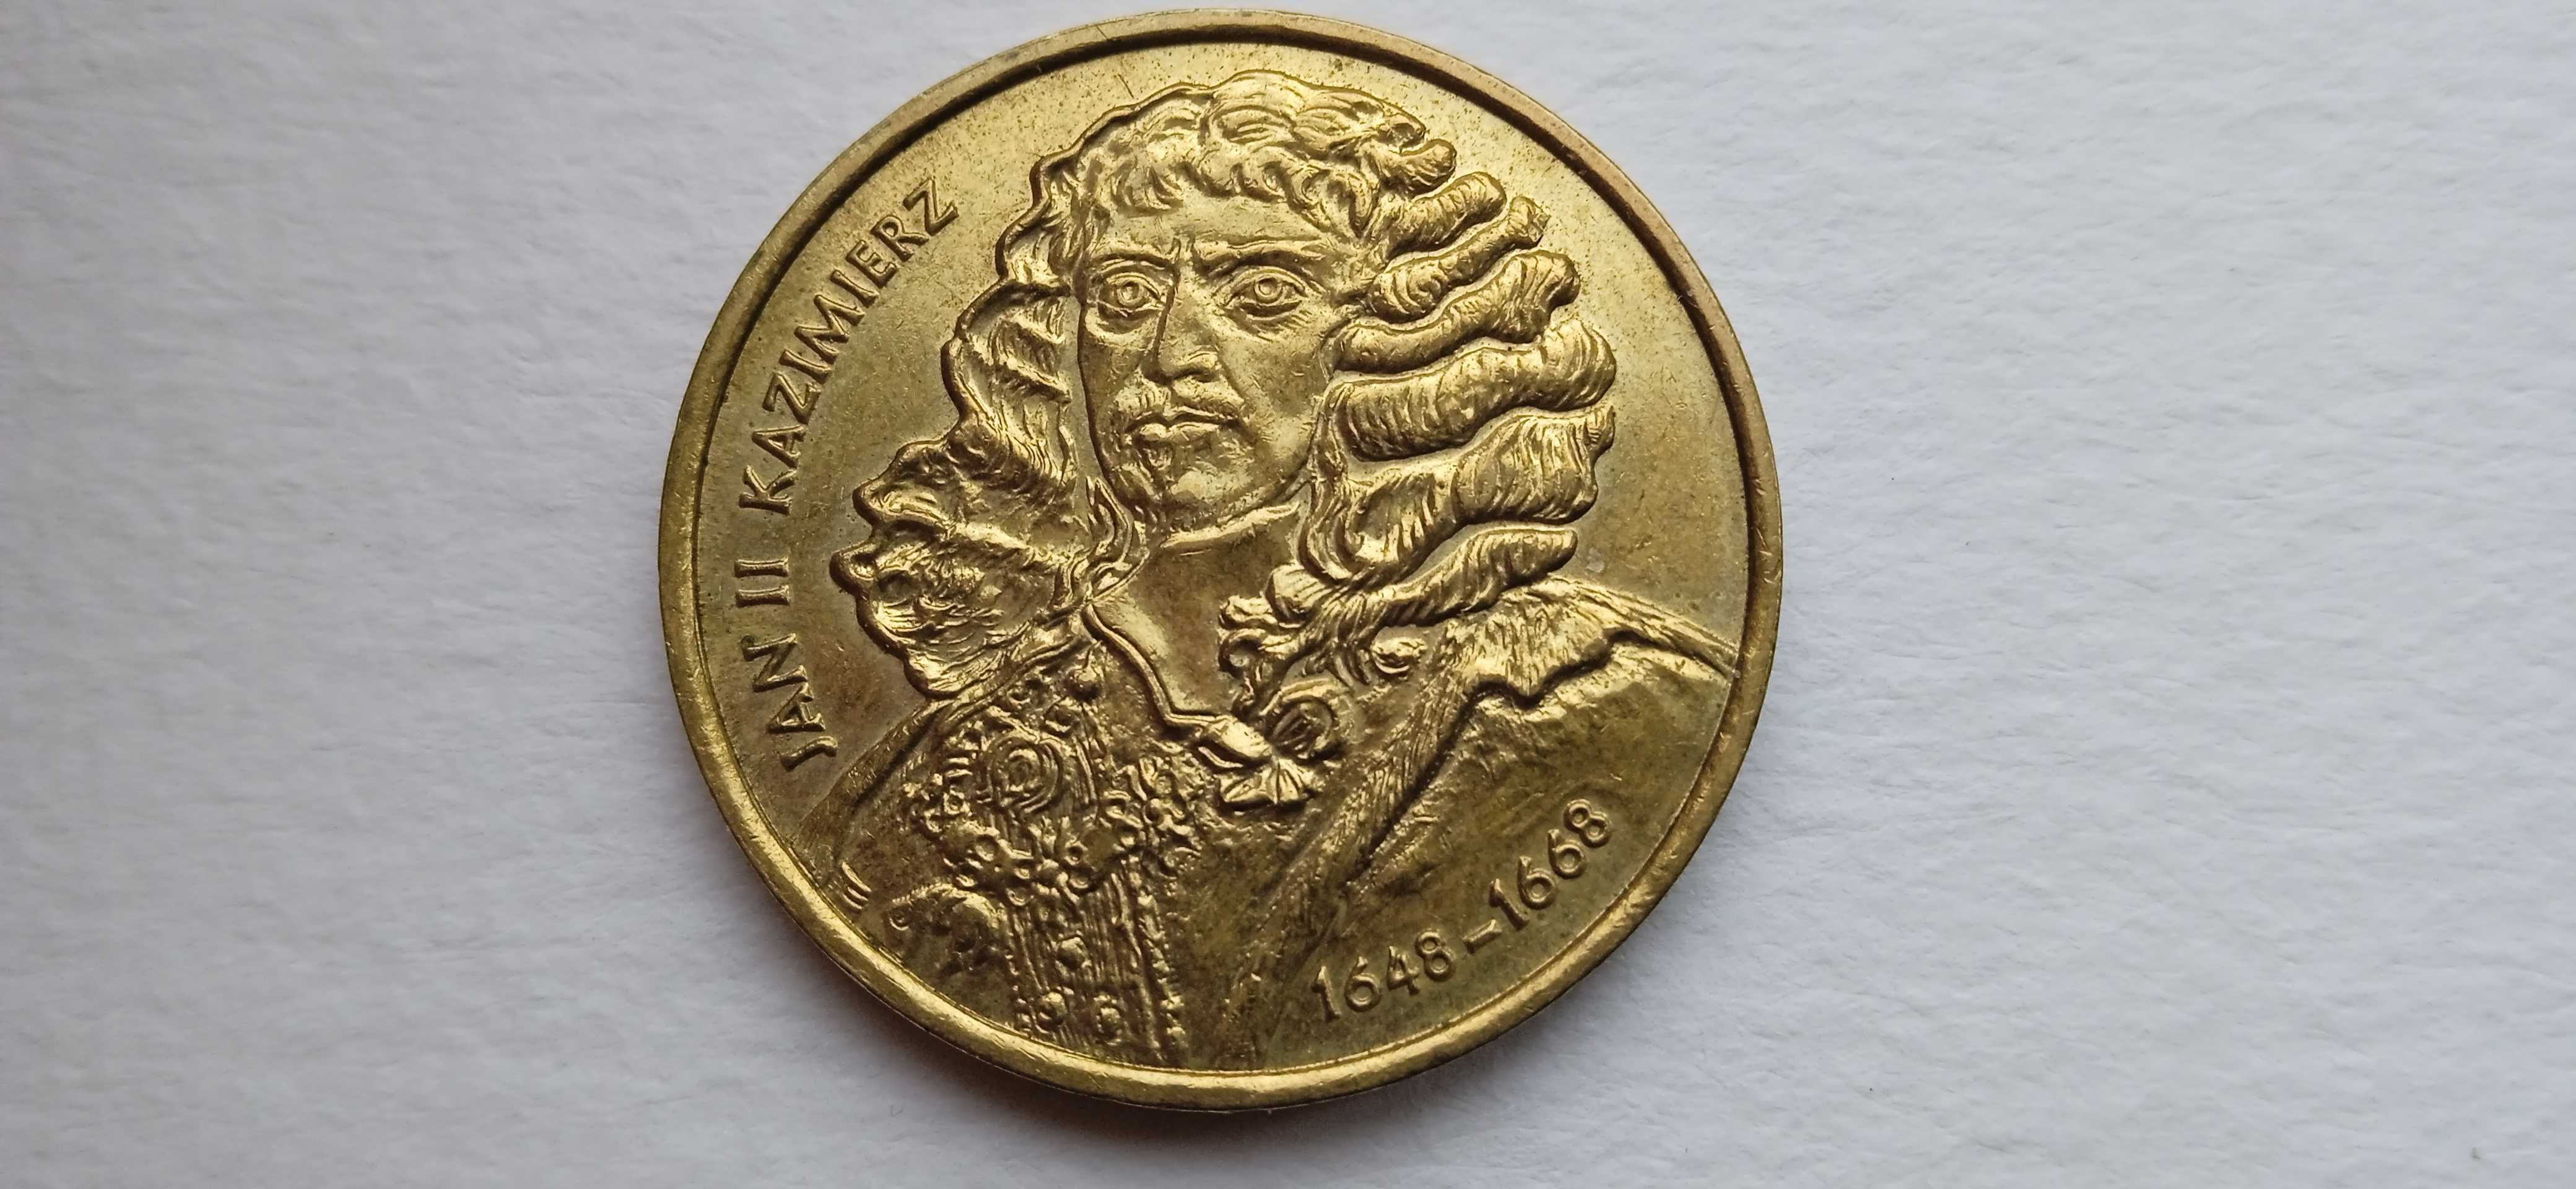 Moneta 2 zł Jan II Kazimierz 2000 rok.